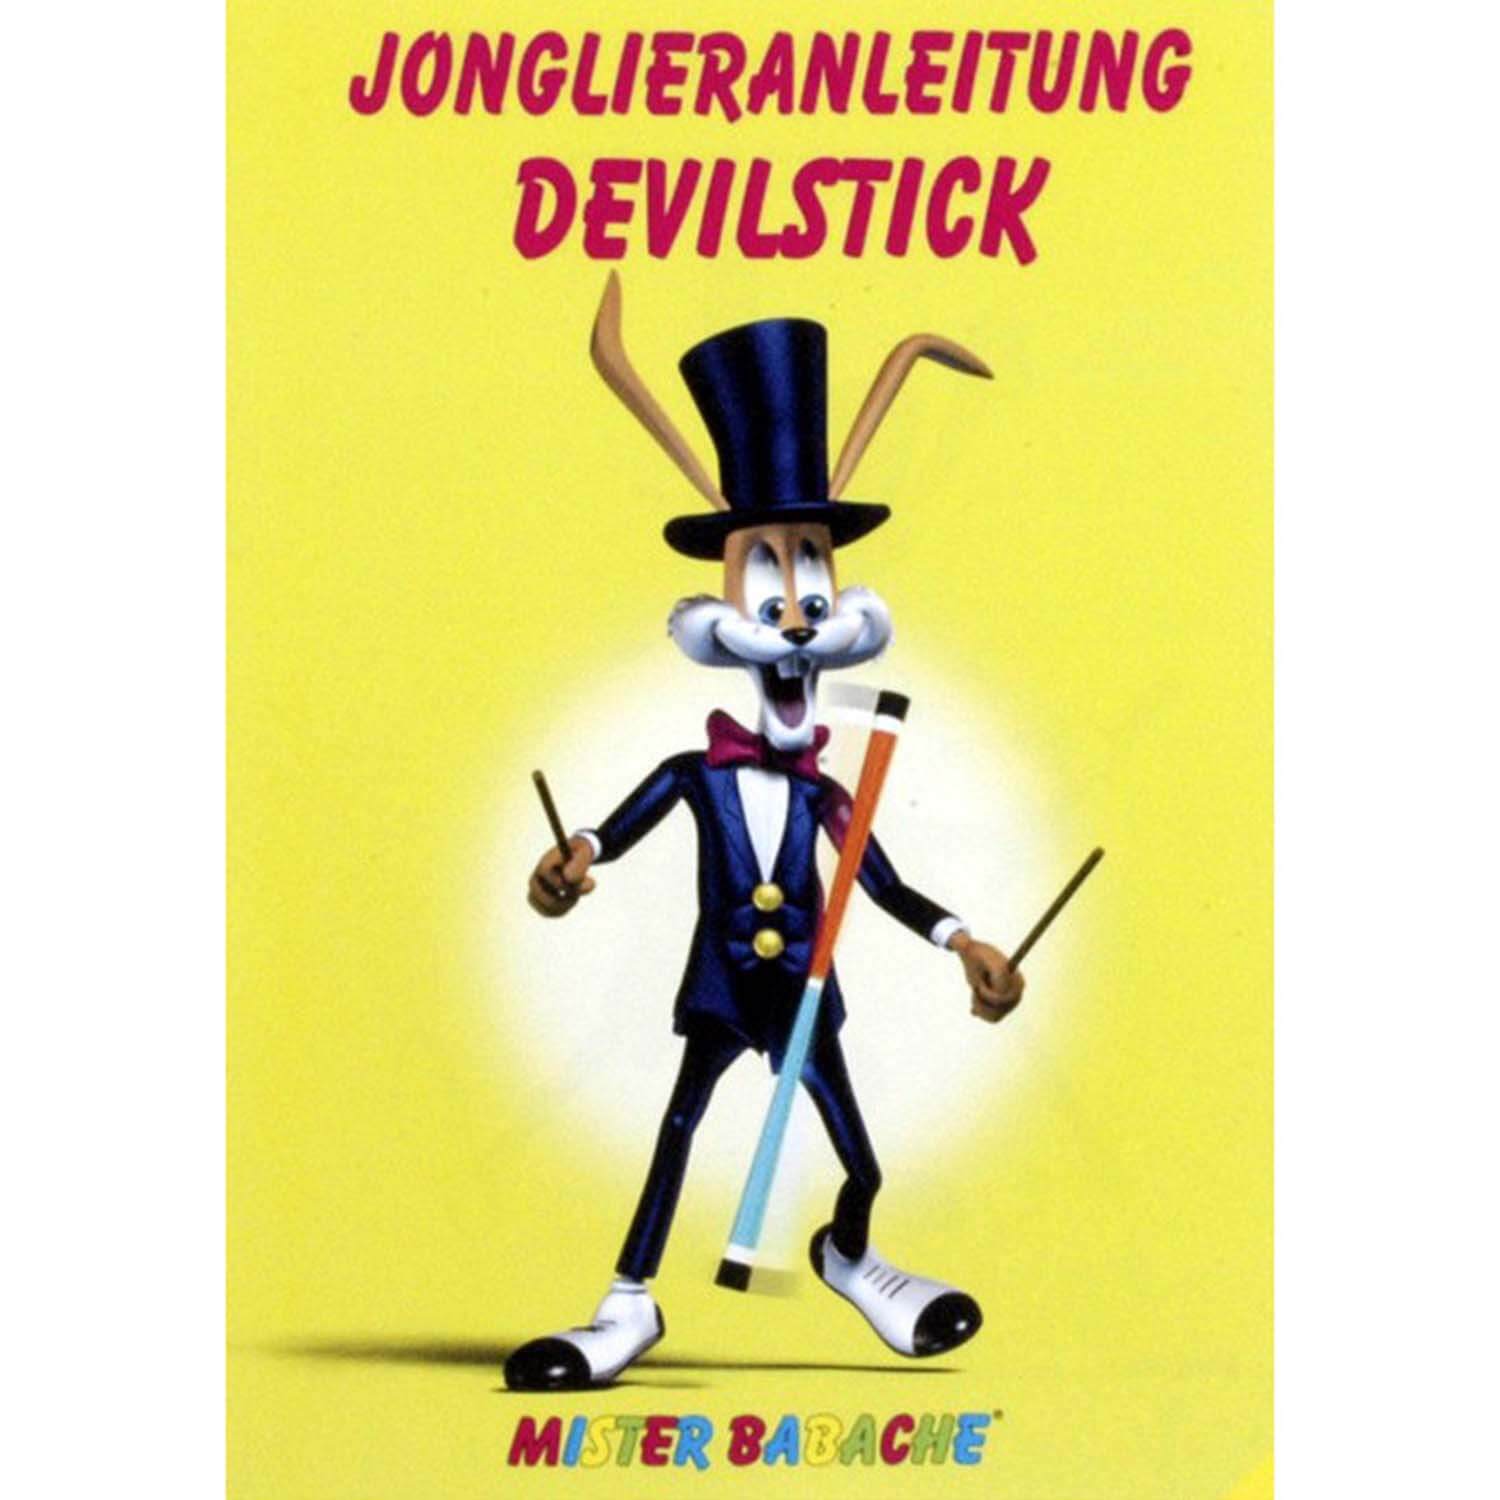 df_jonglierheft-devilstick_001